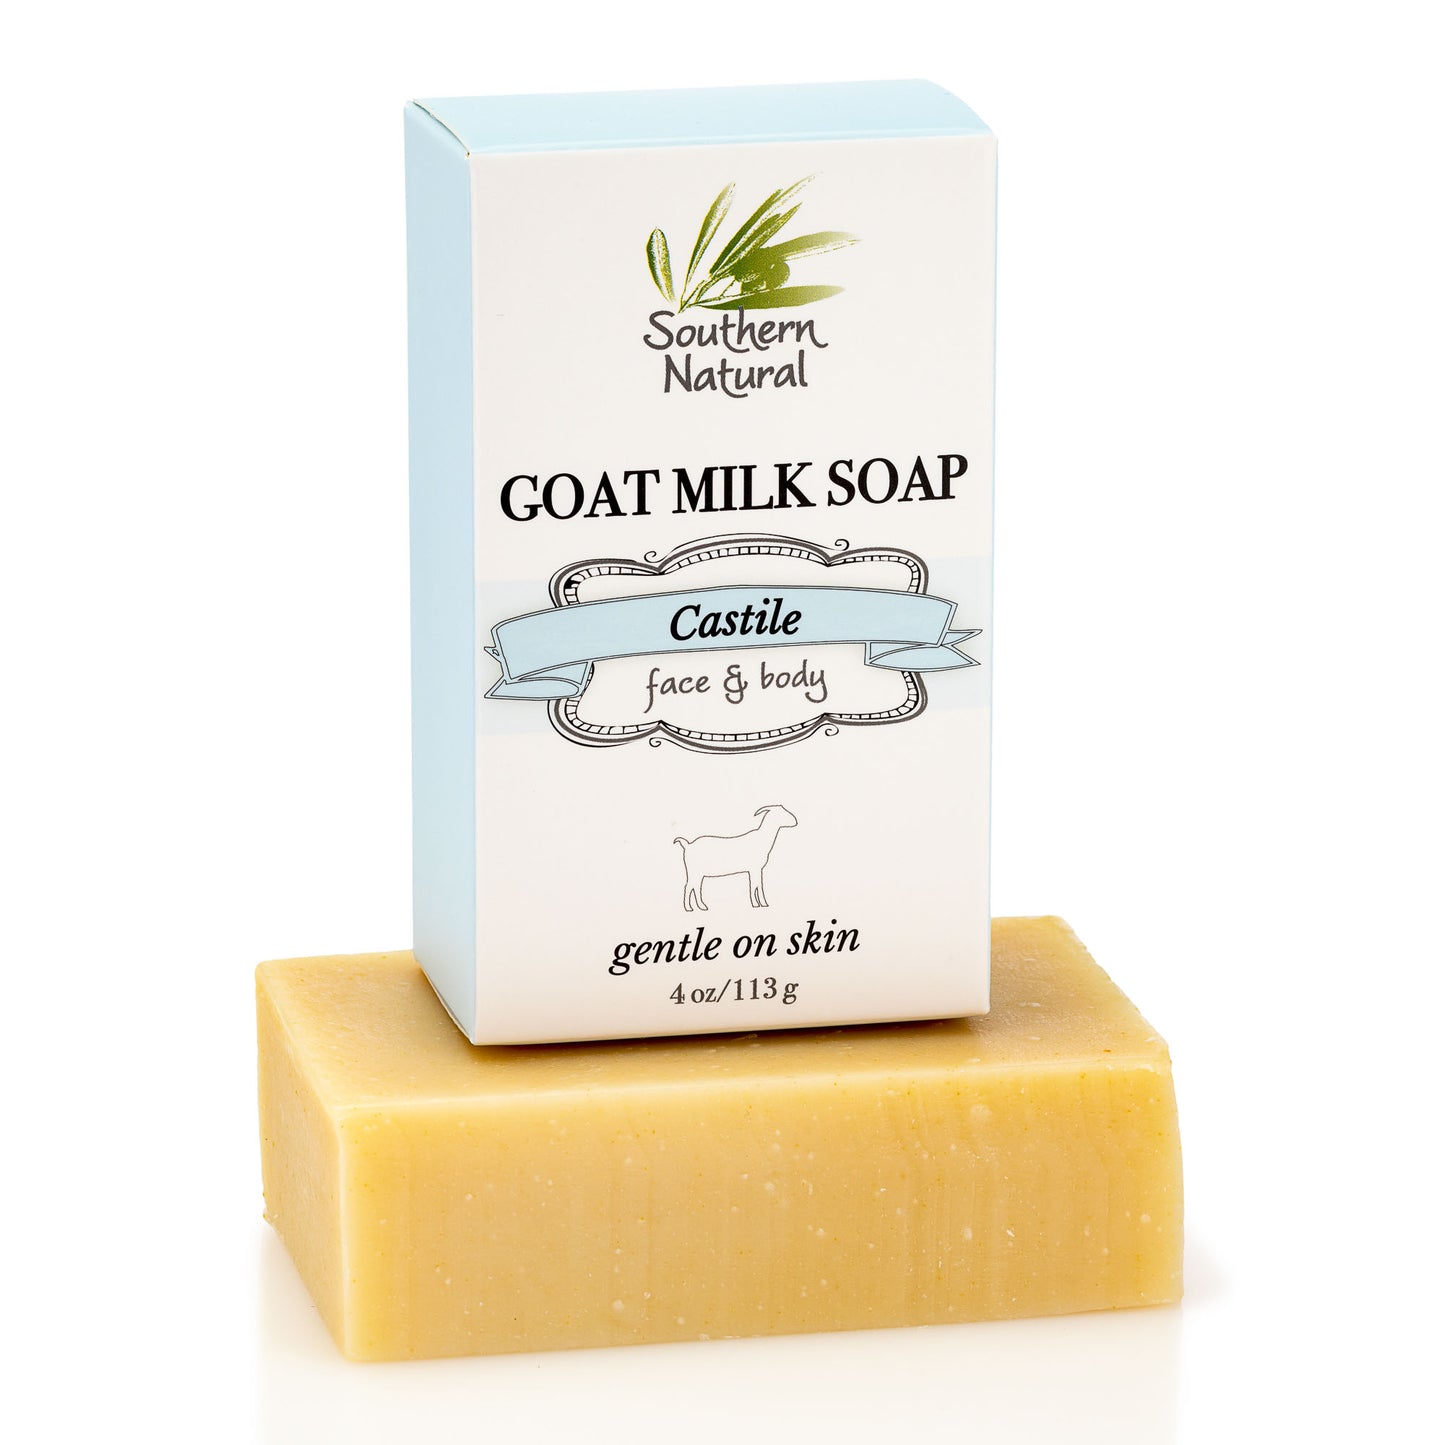 Castile Goat Milk Soap